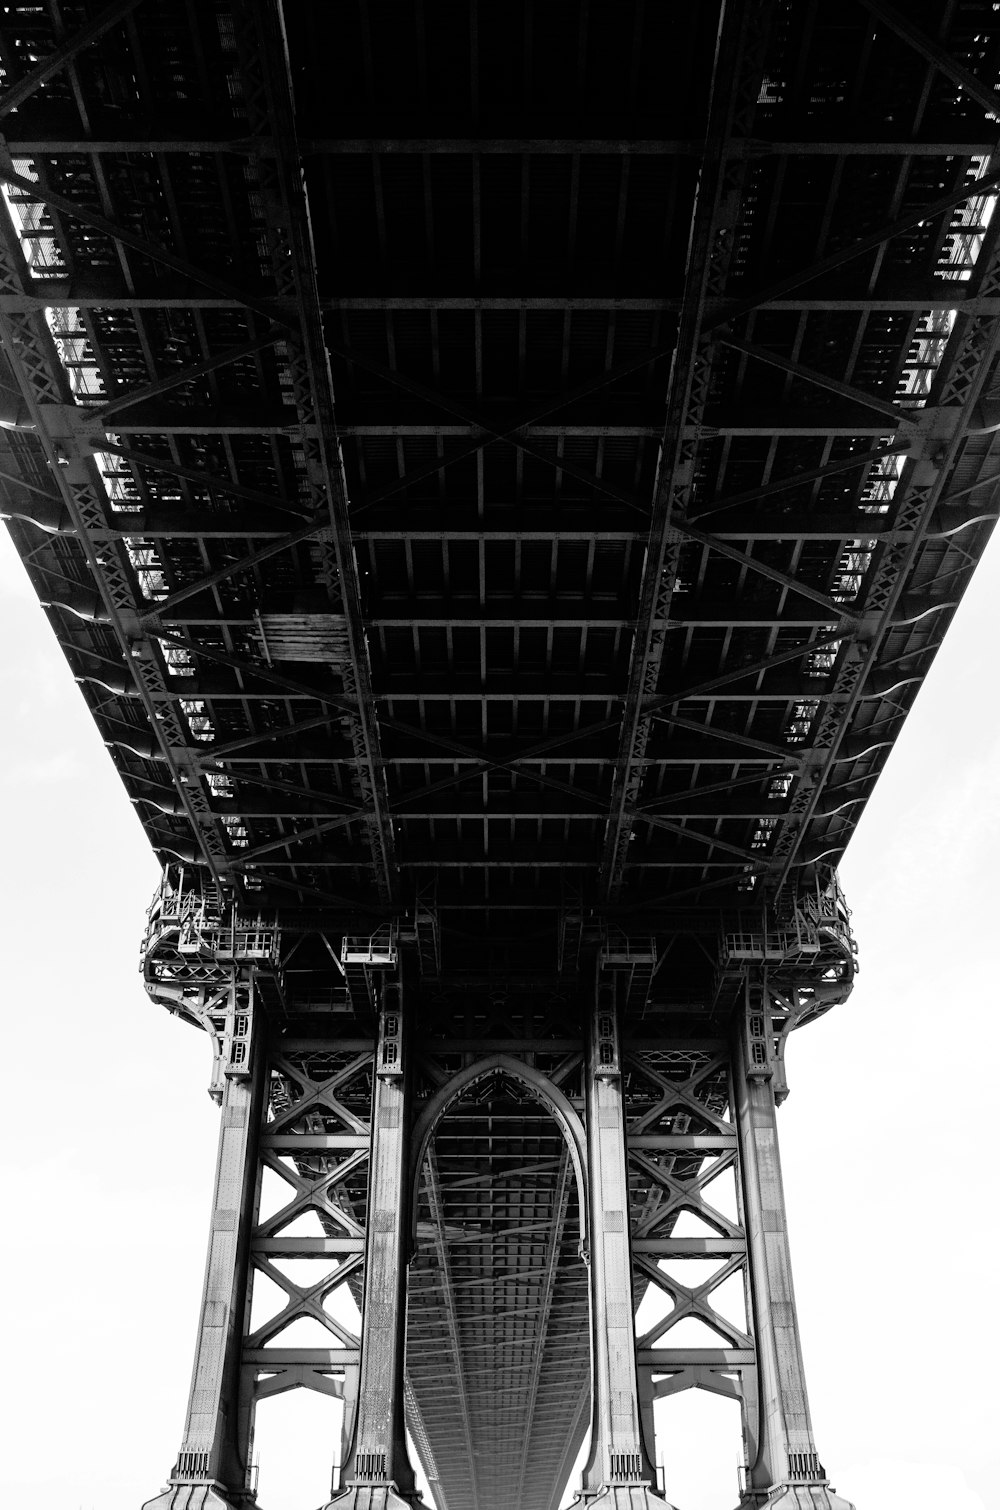 Fotografía en escala de grises de un puente colgante